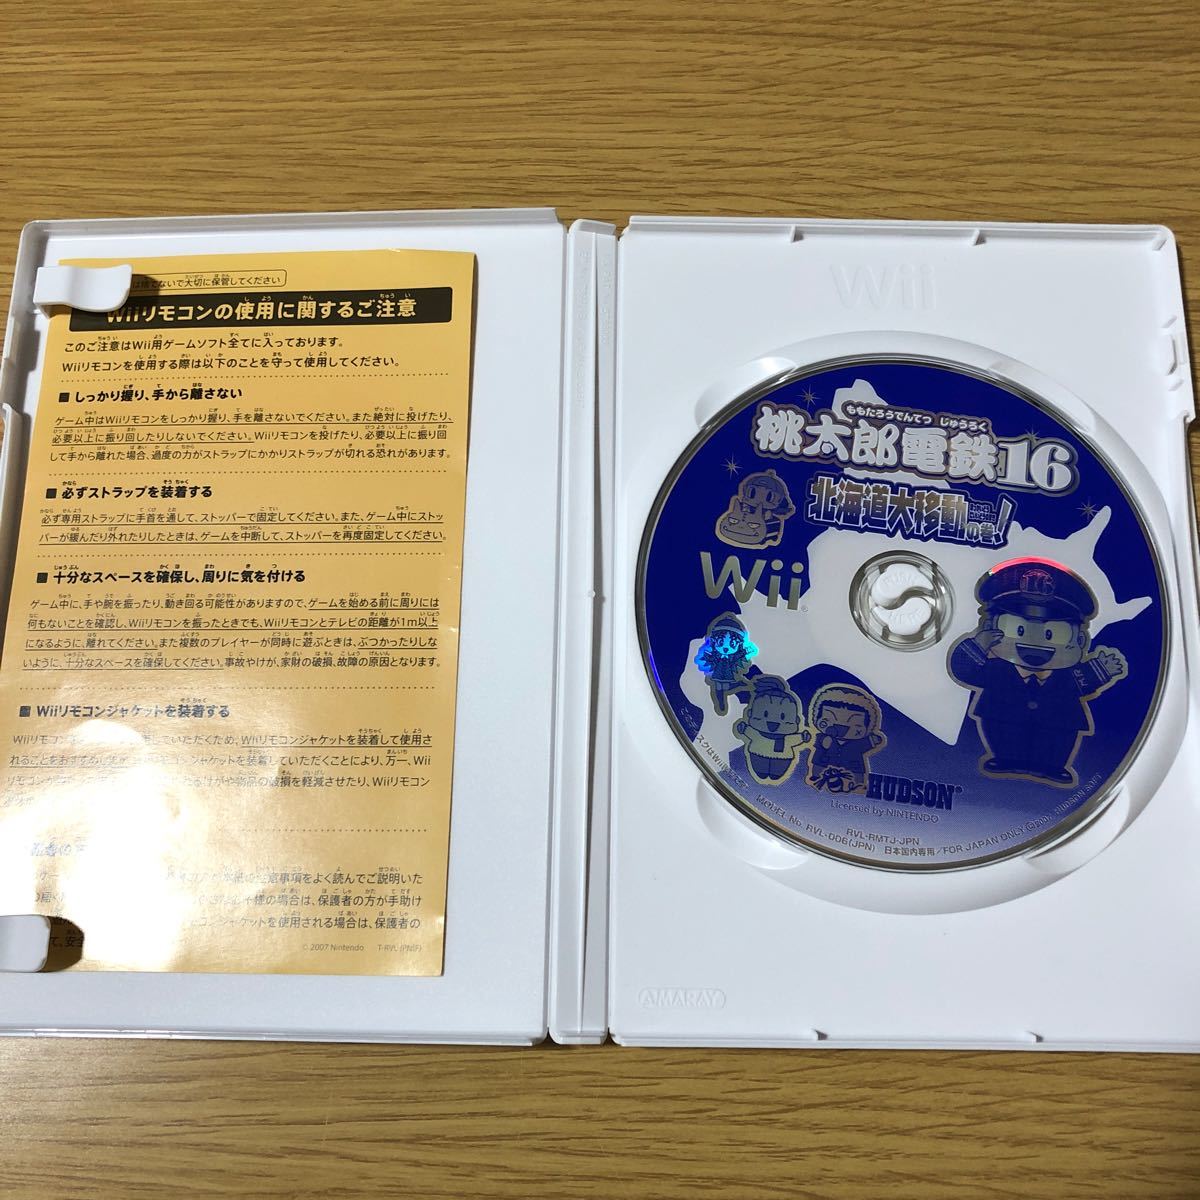 桃太郎電鉄16北海道大移動の巻! Wii